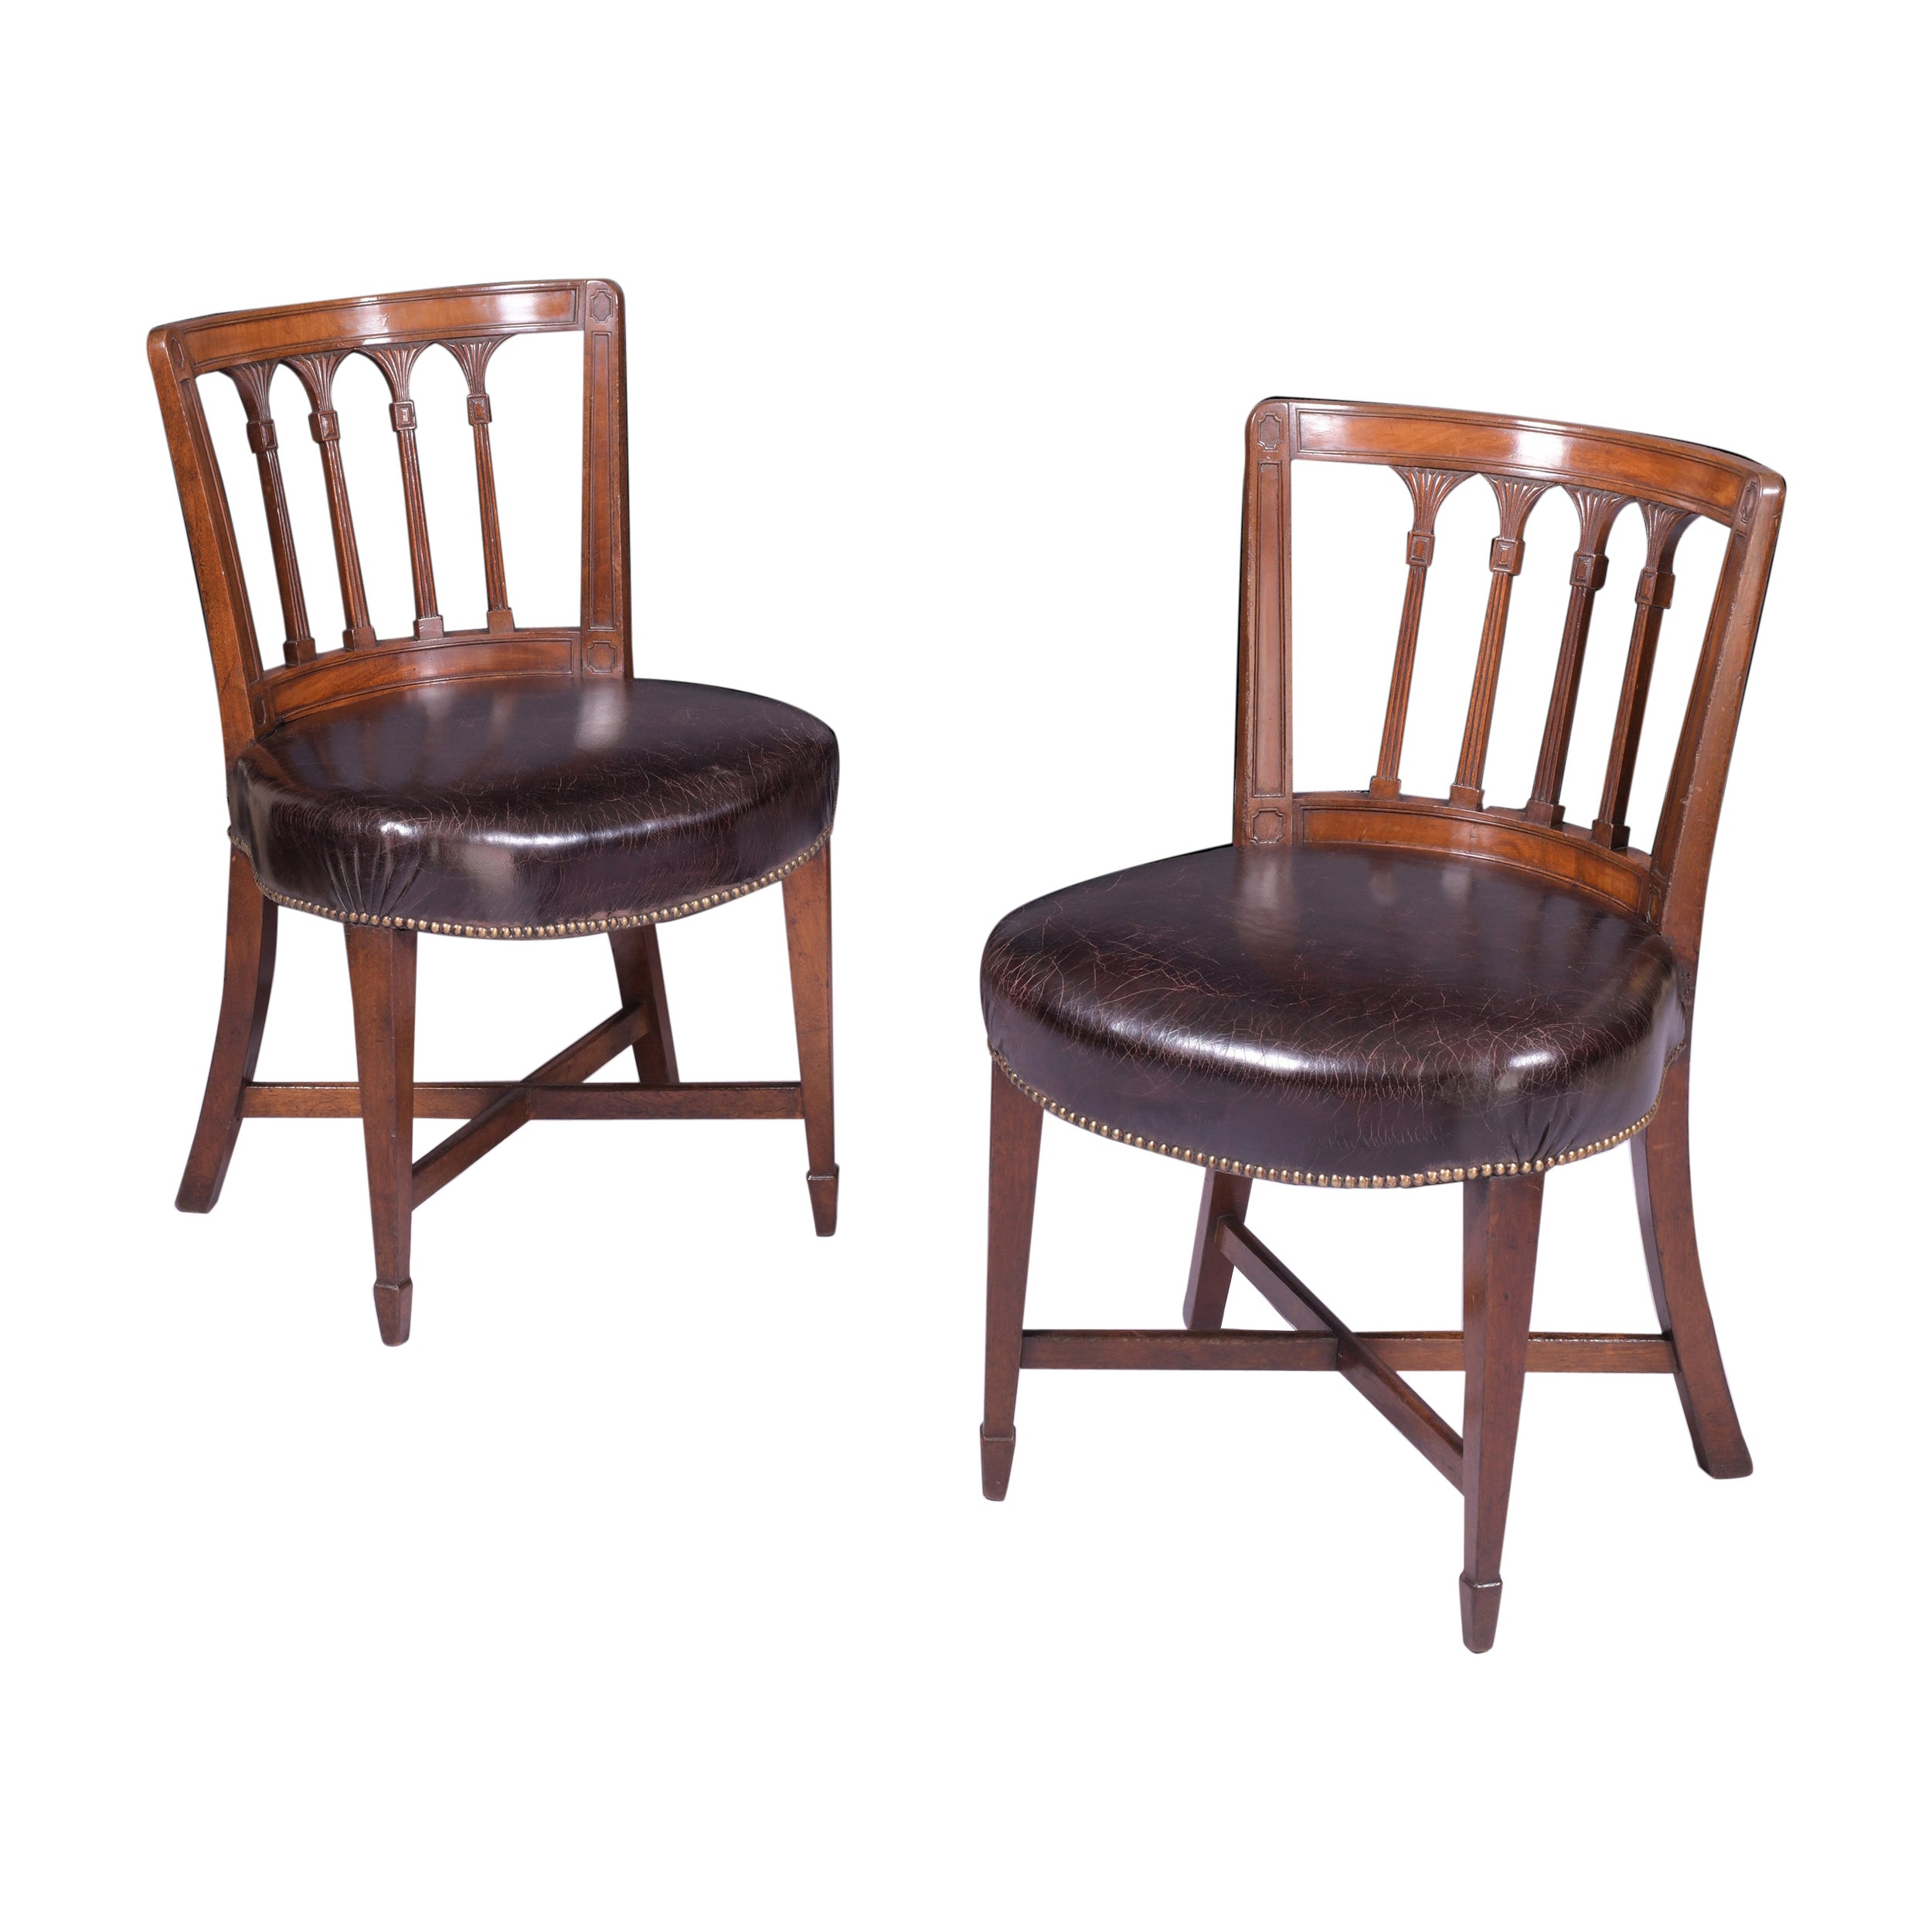 Paire de chaises d'appoint du début du XIXe siècle attribuées à Gillows of Lancaster